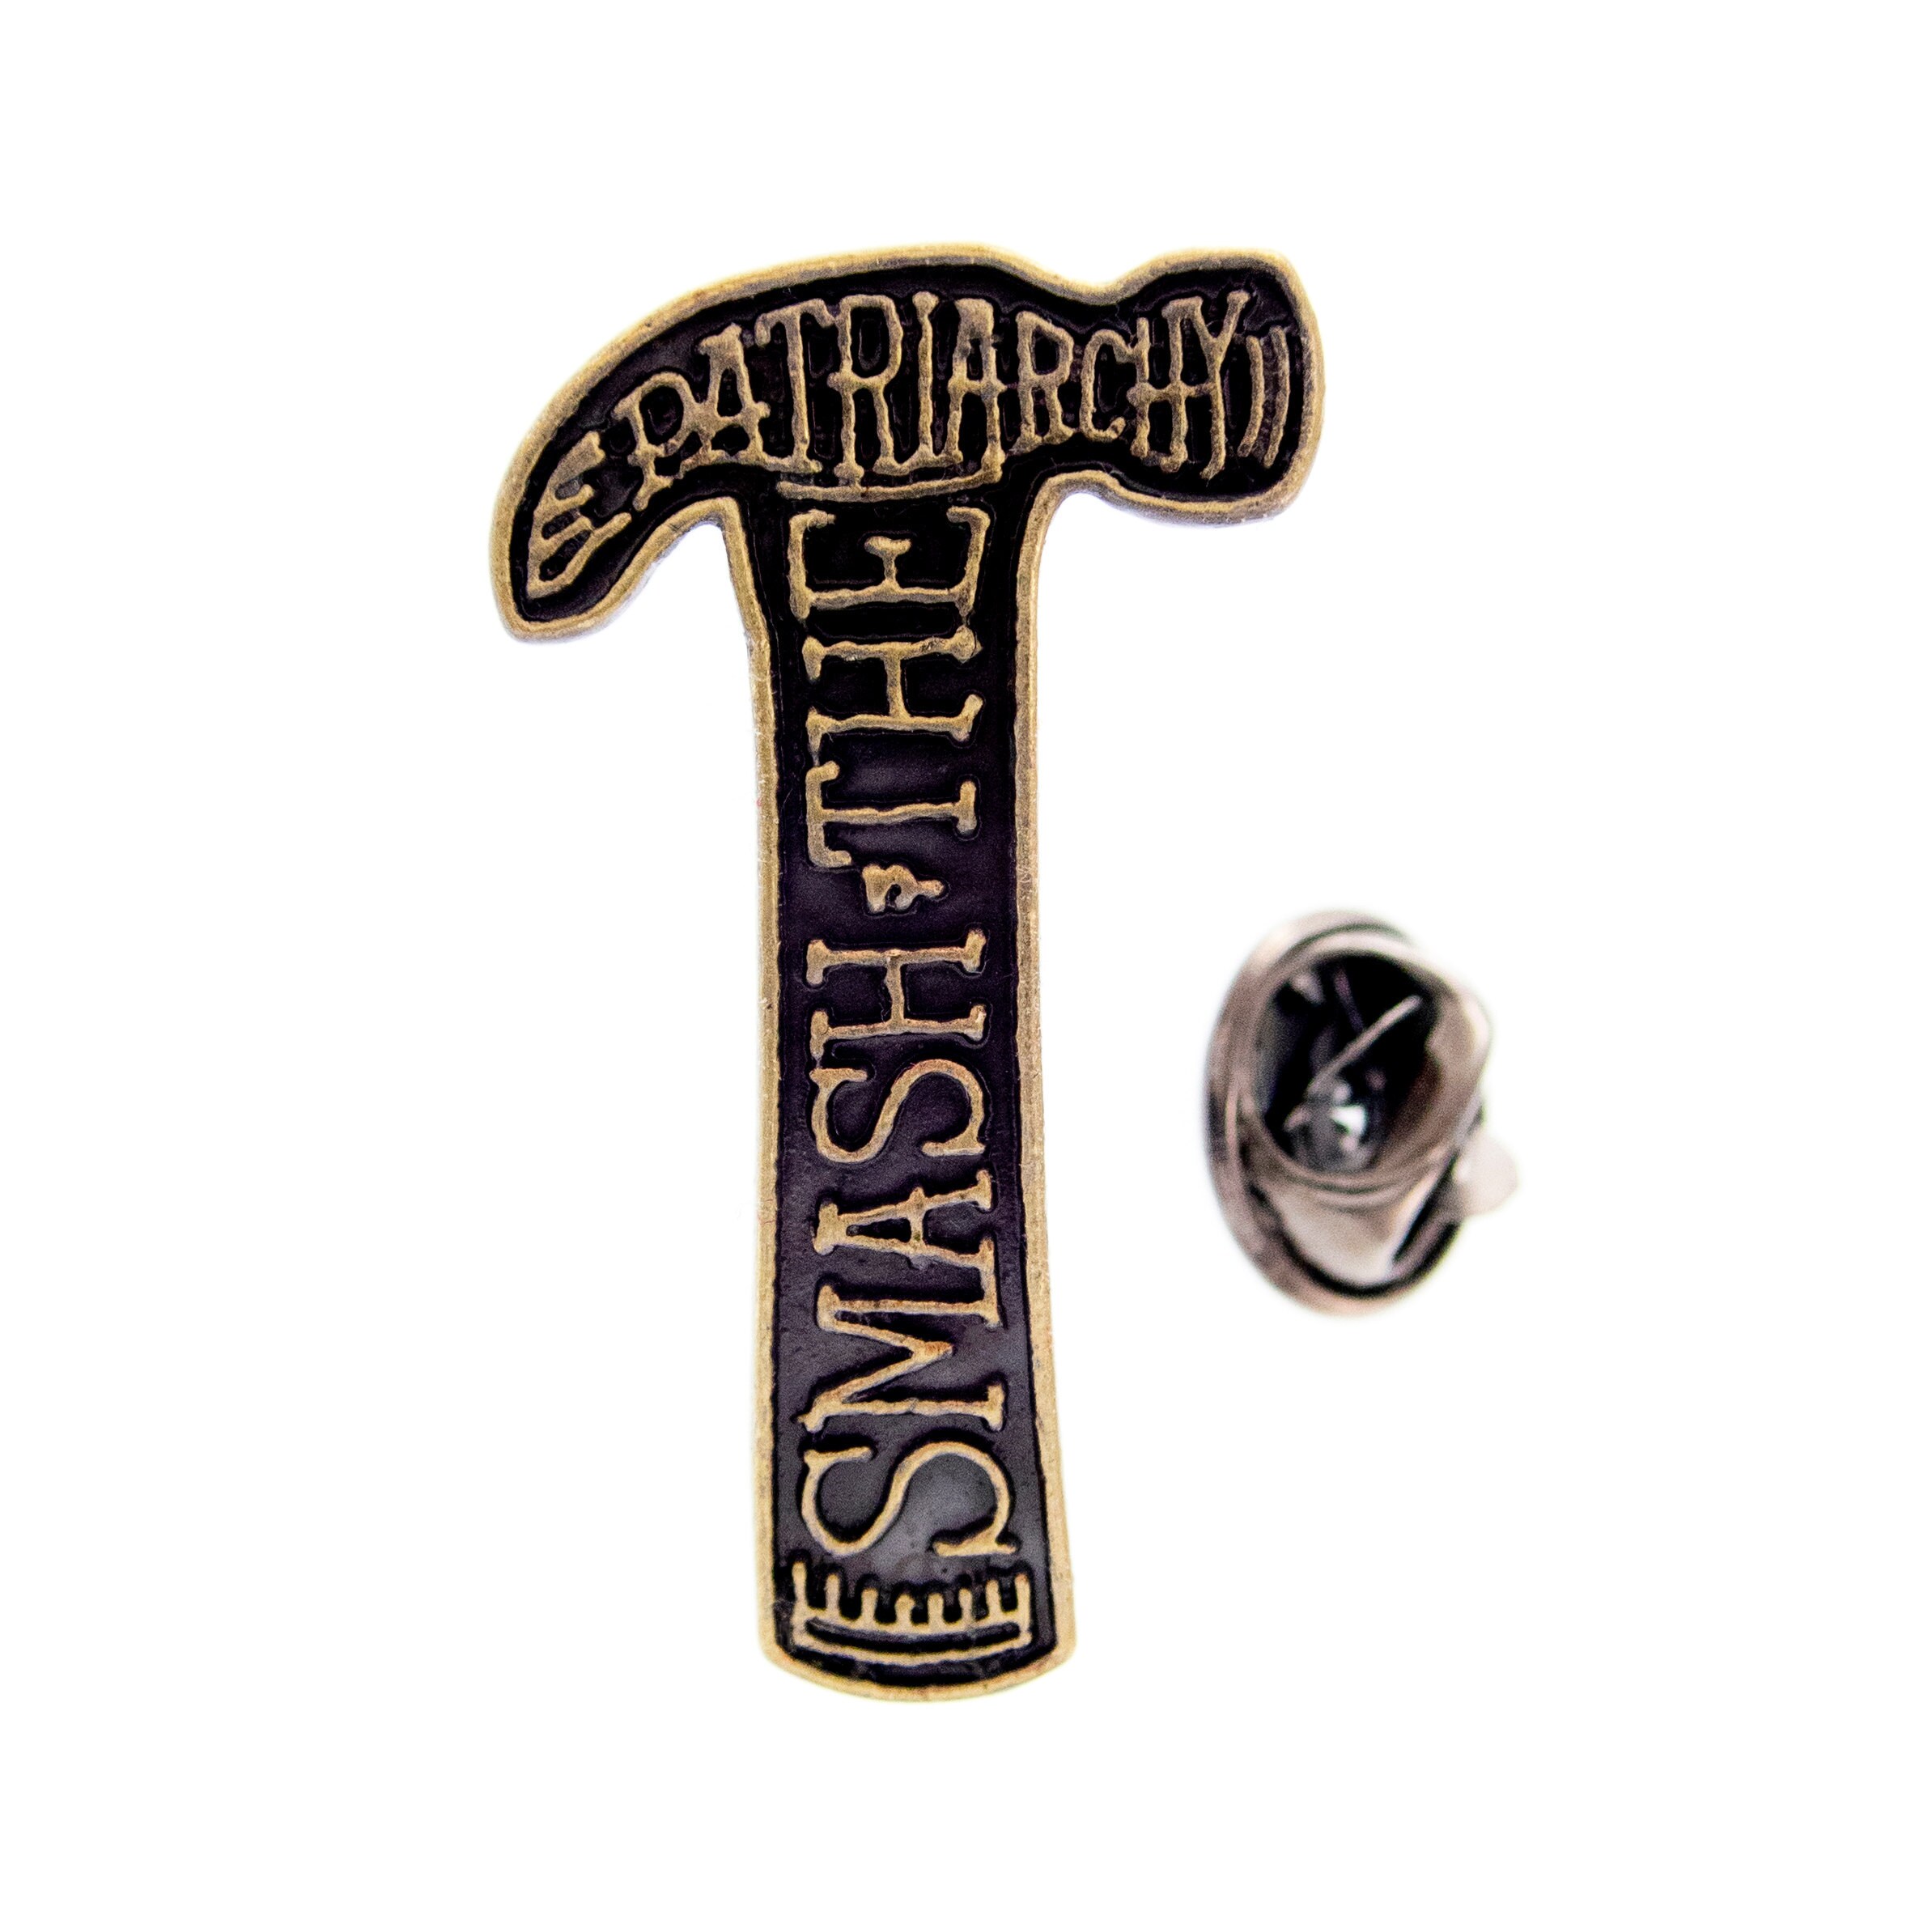 feminist pin badge brooch enamel pin lapel cute hammer